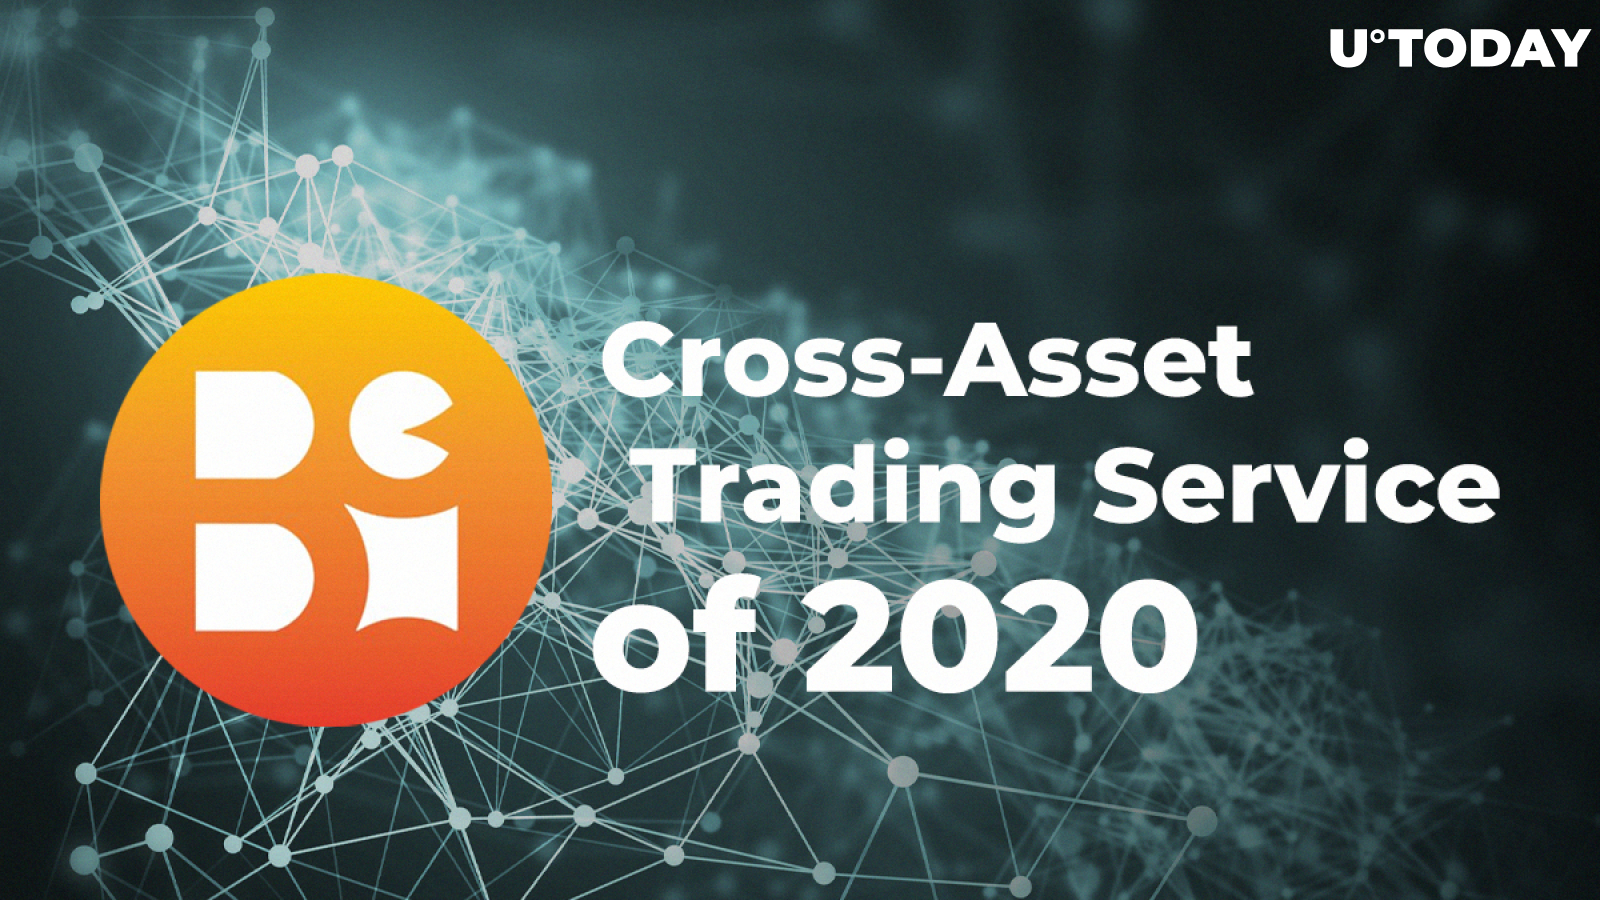 Bex500 Review: Cross-Asset Trading Platform of 2020